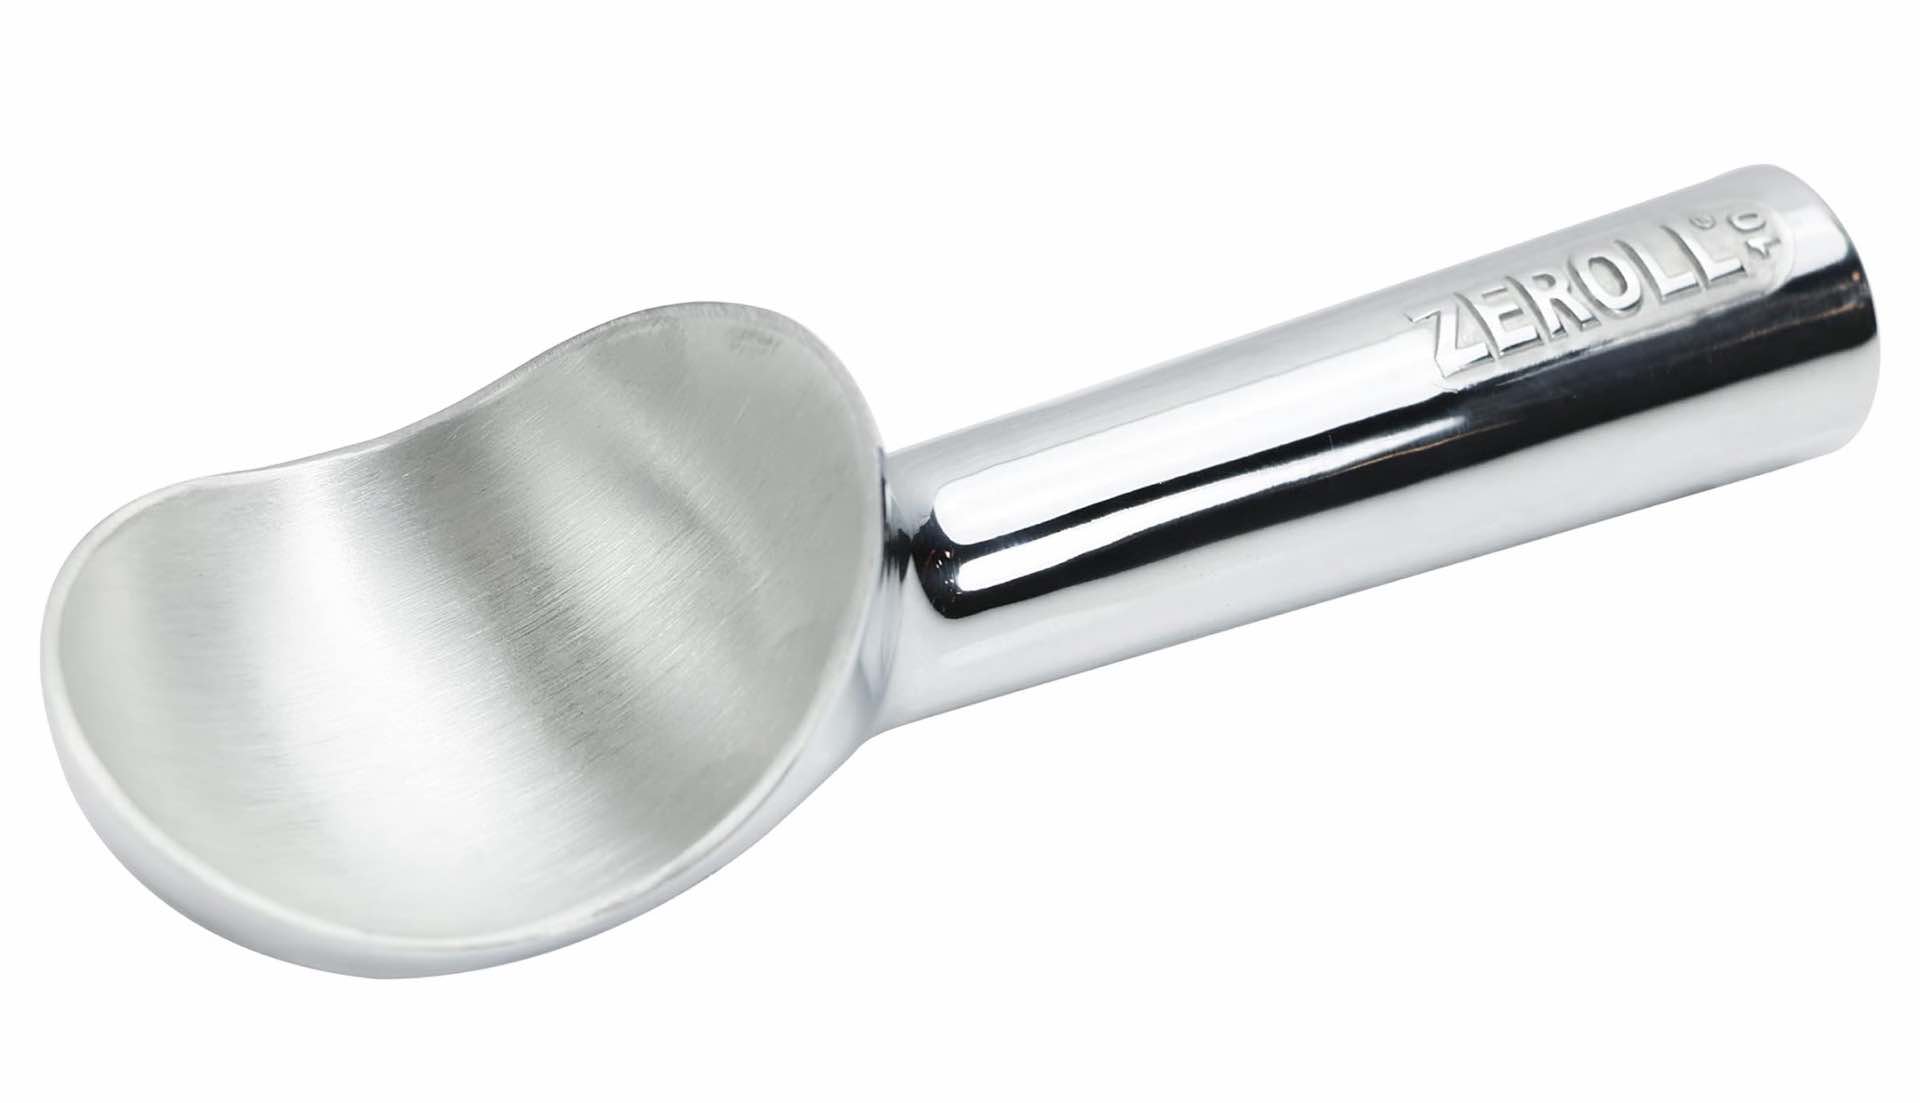 zeroll-original-ice-cream-scoop-with-heat-conductive-handle